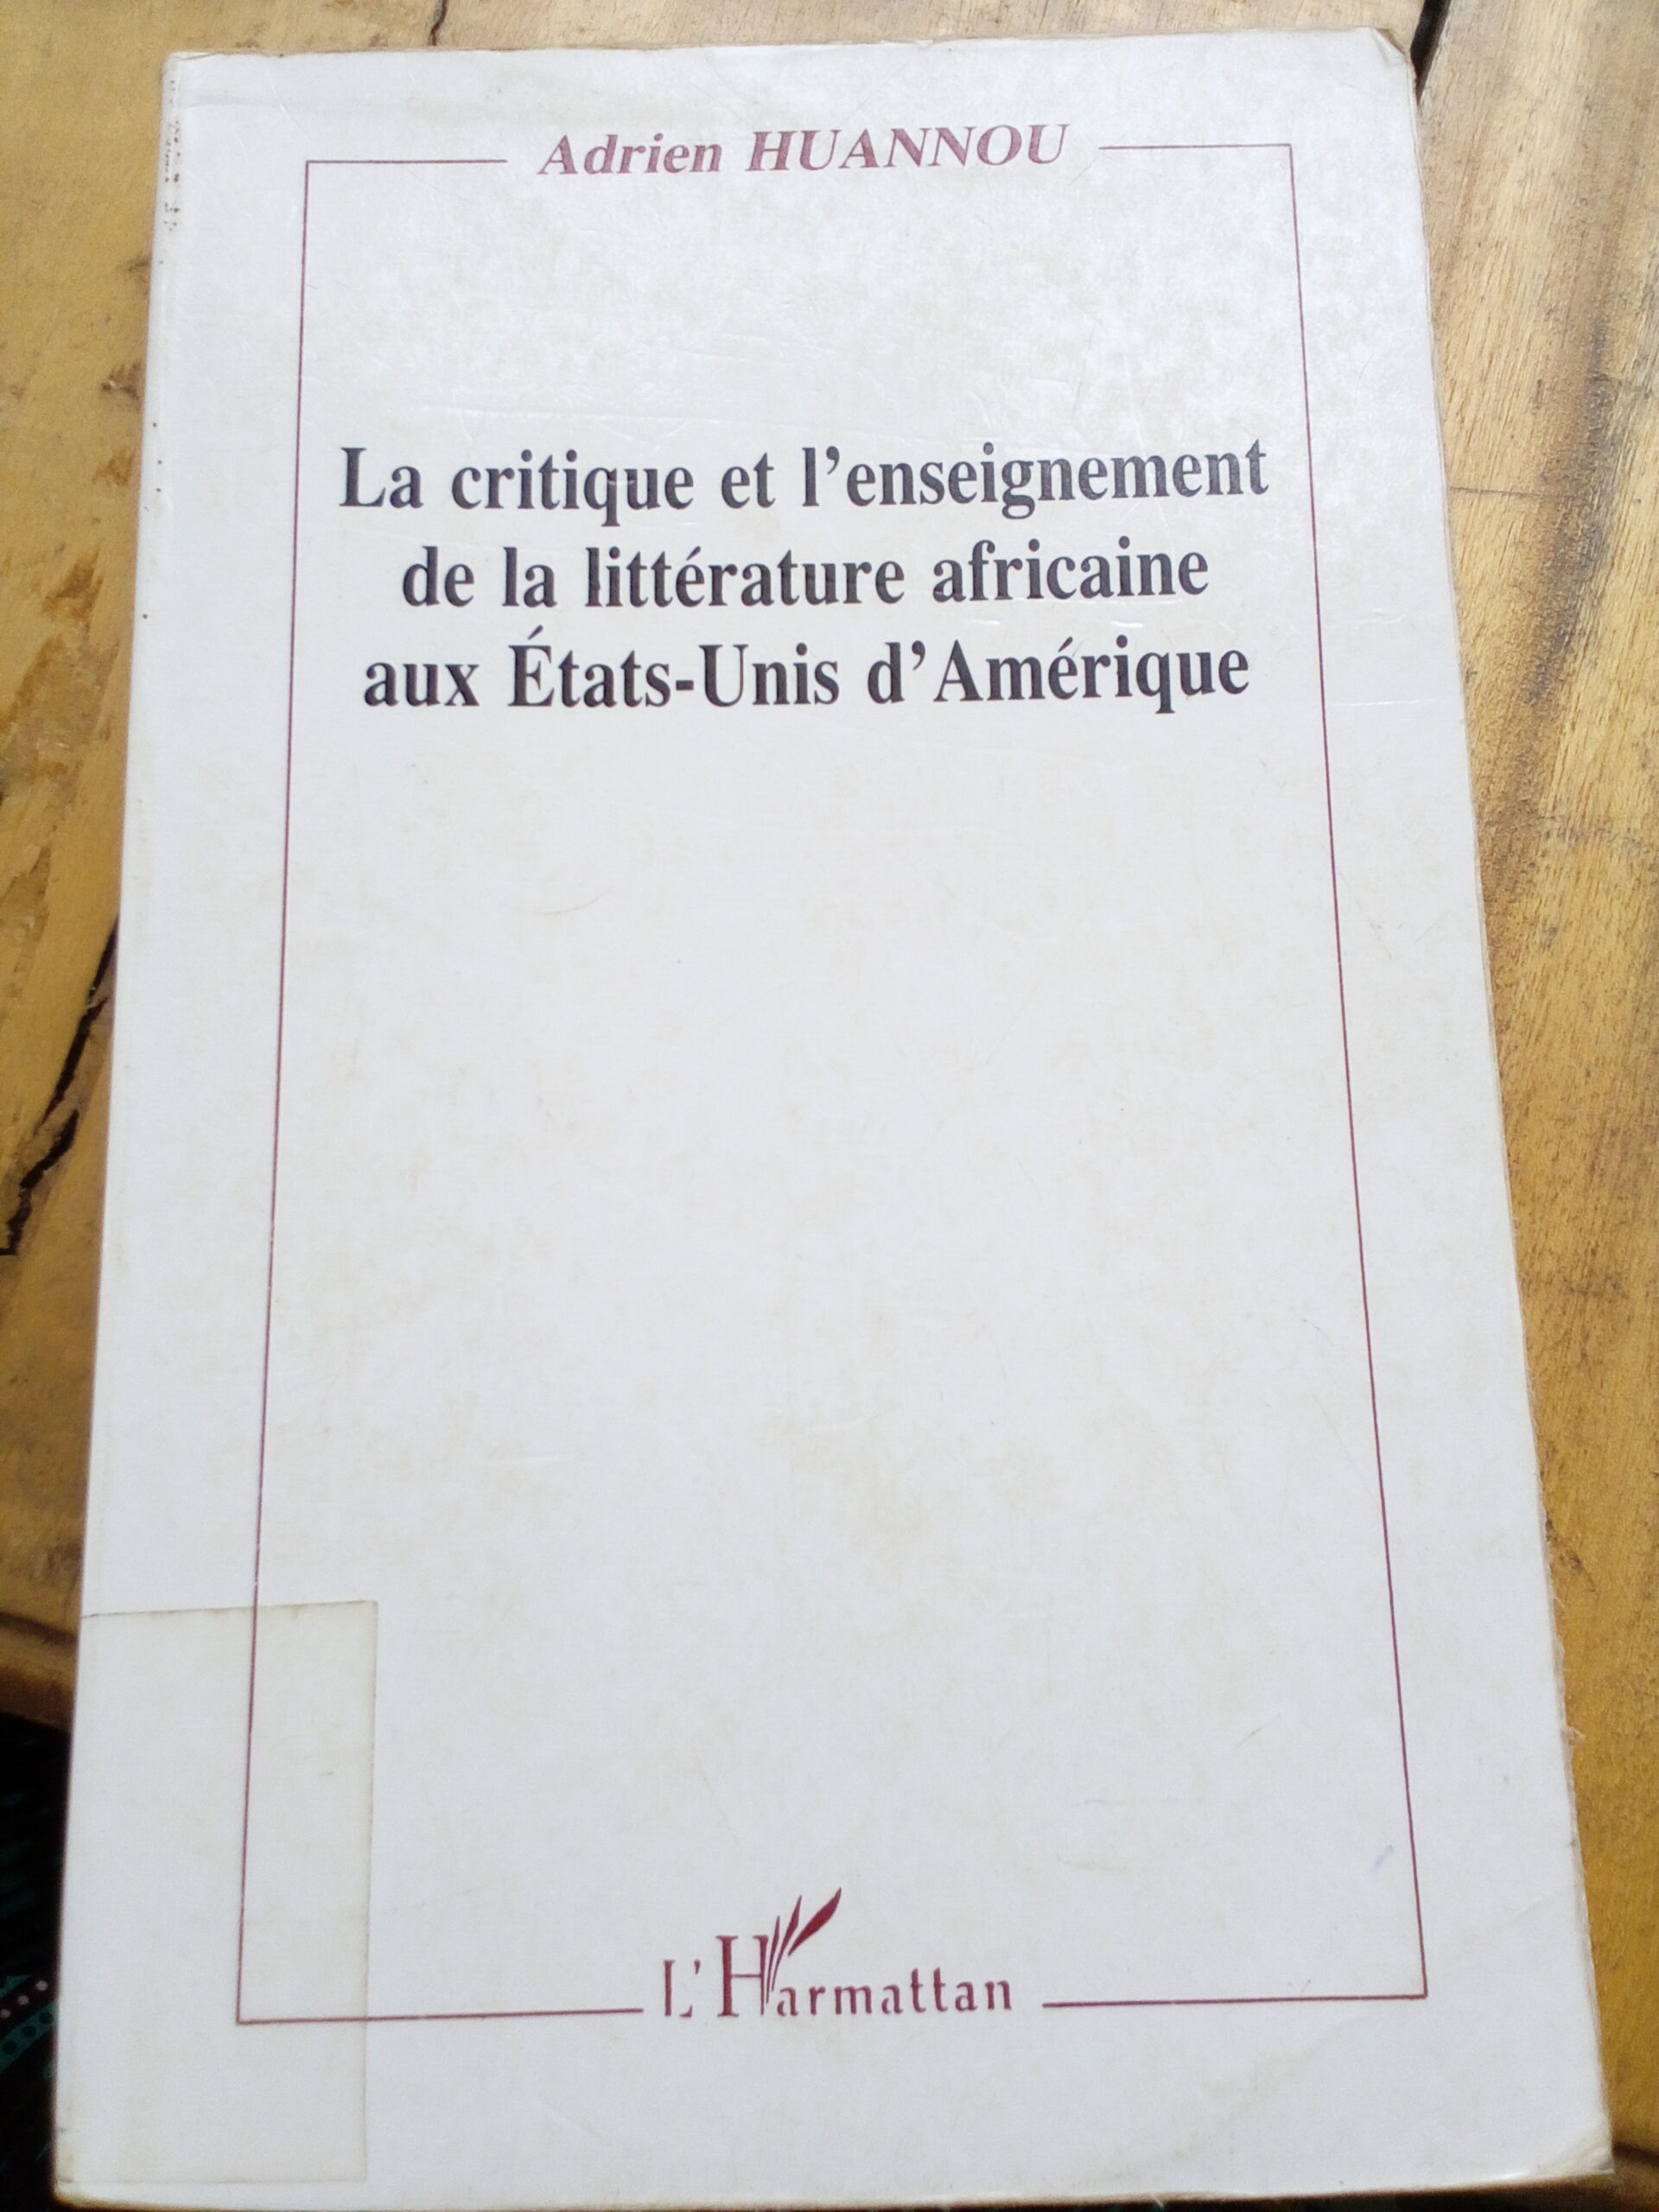 La critique et l’enseignement de la littérature africaine aux États-Unis d’Amérique d'Adrien HUANNOU